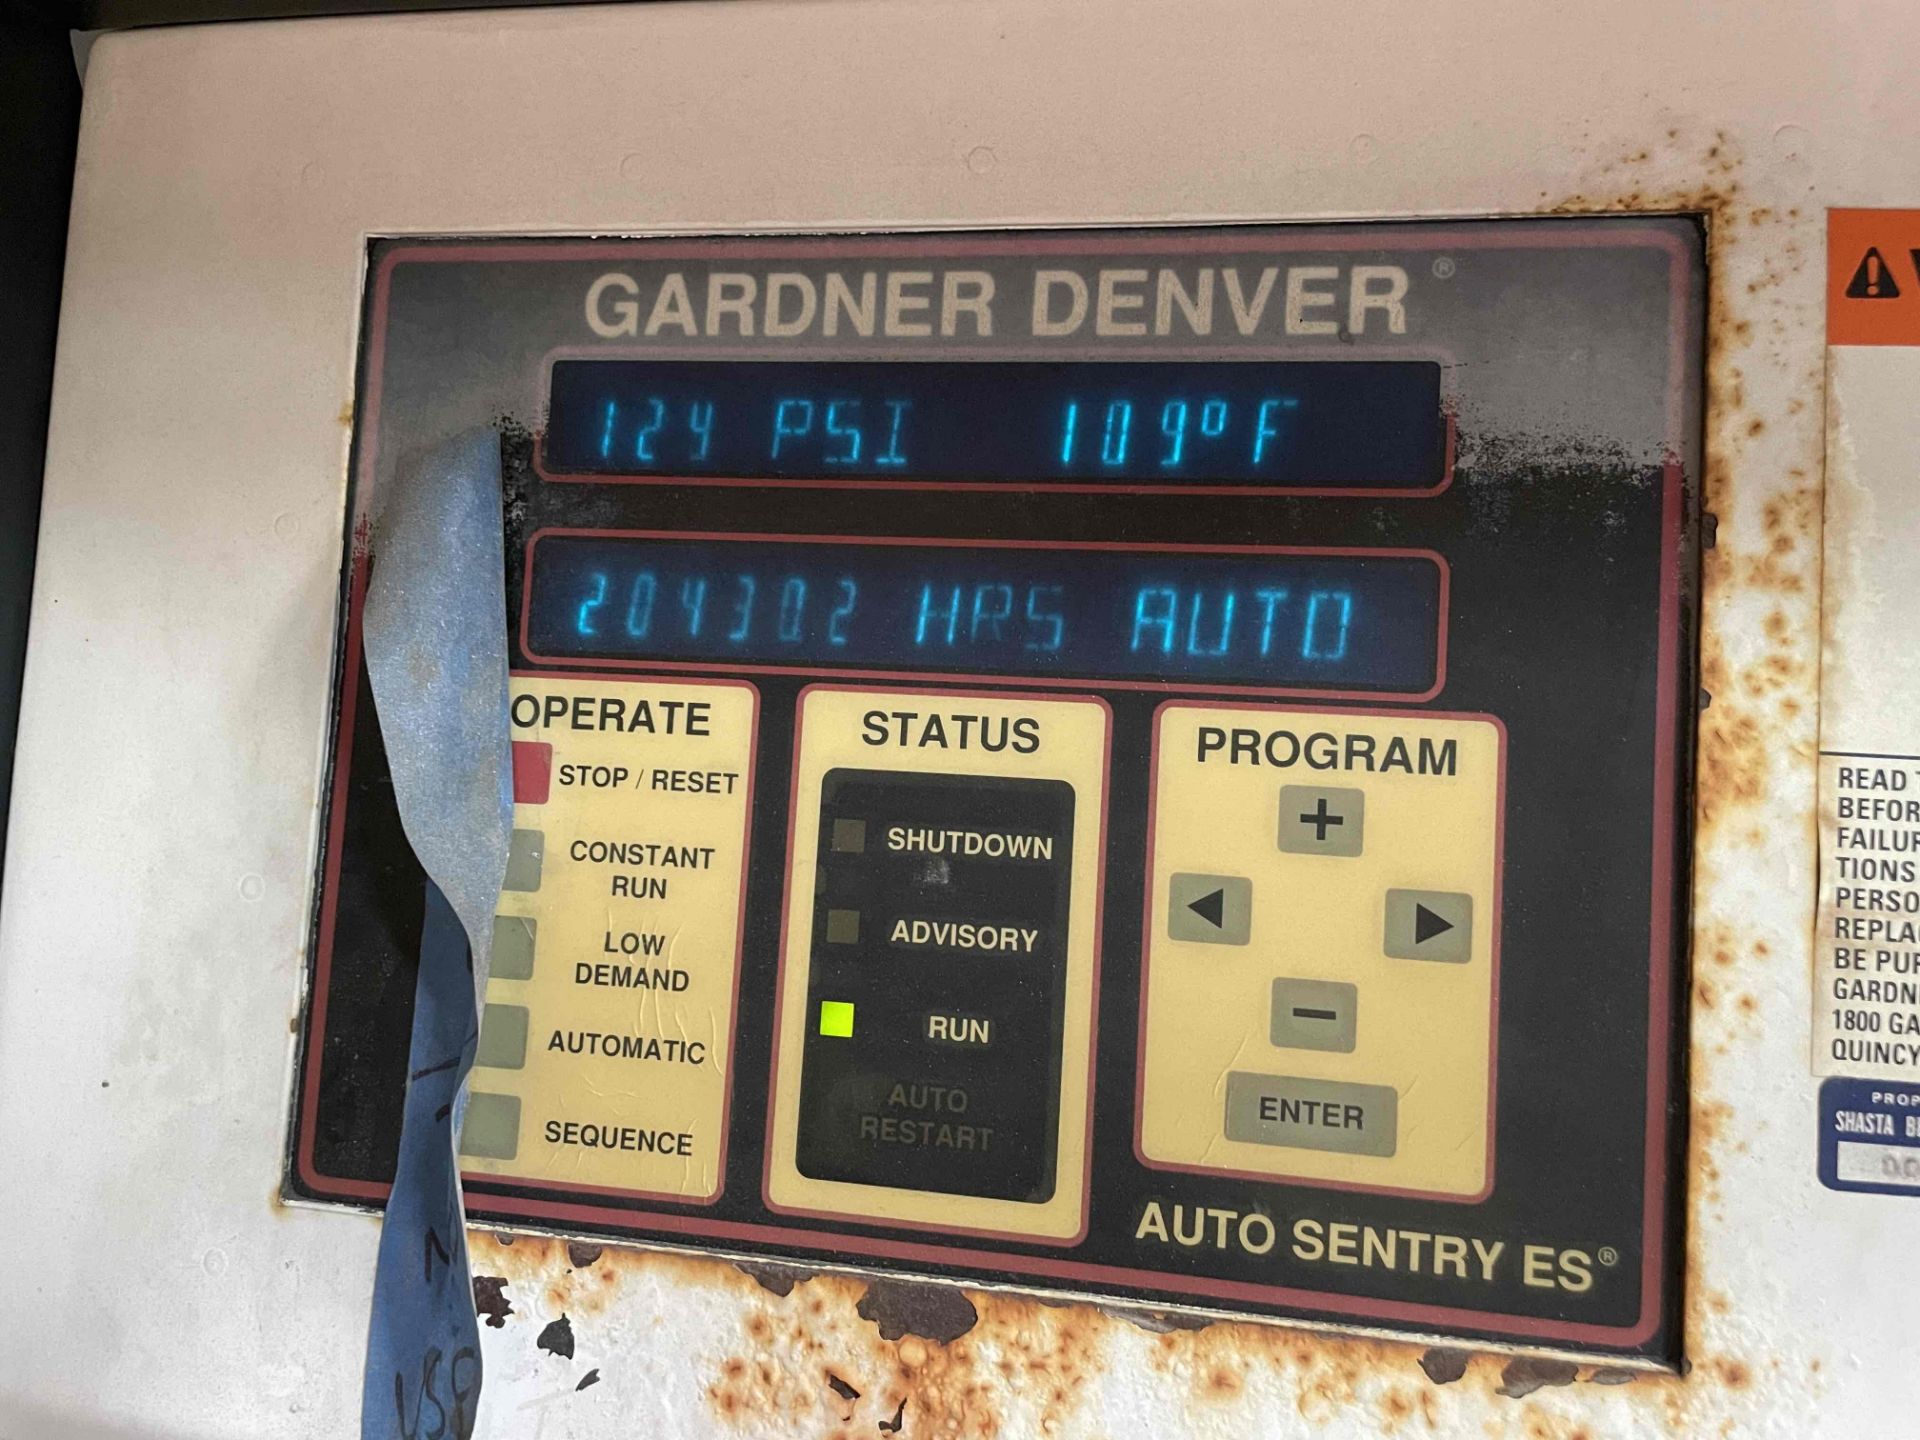 OFFSITE Igardner denver compressor - Image 2 of 7